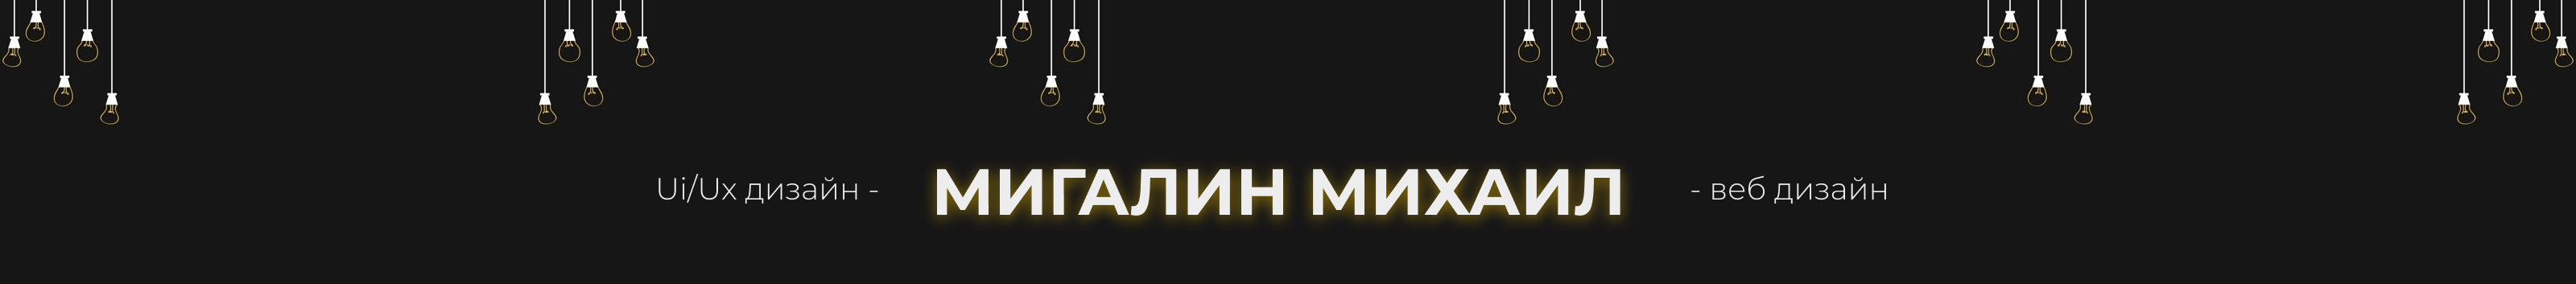 Михаил Мигалин's profile banner